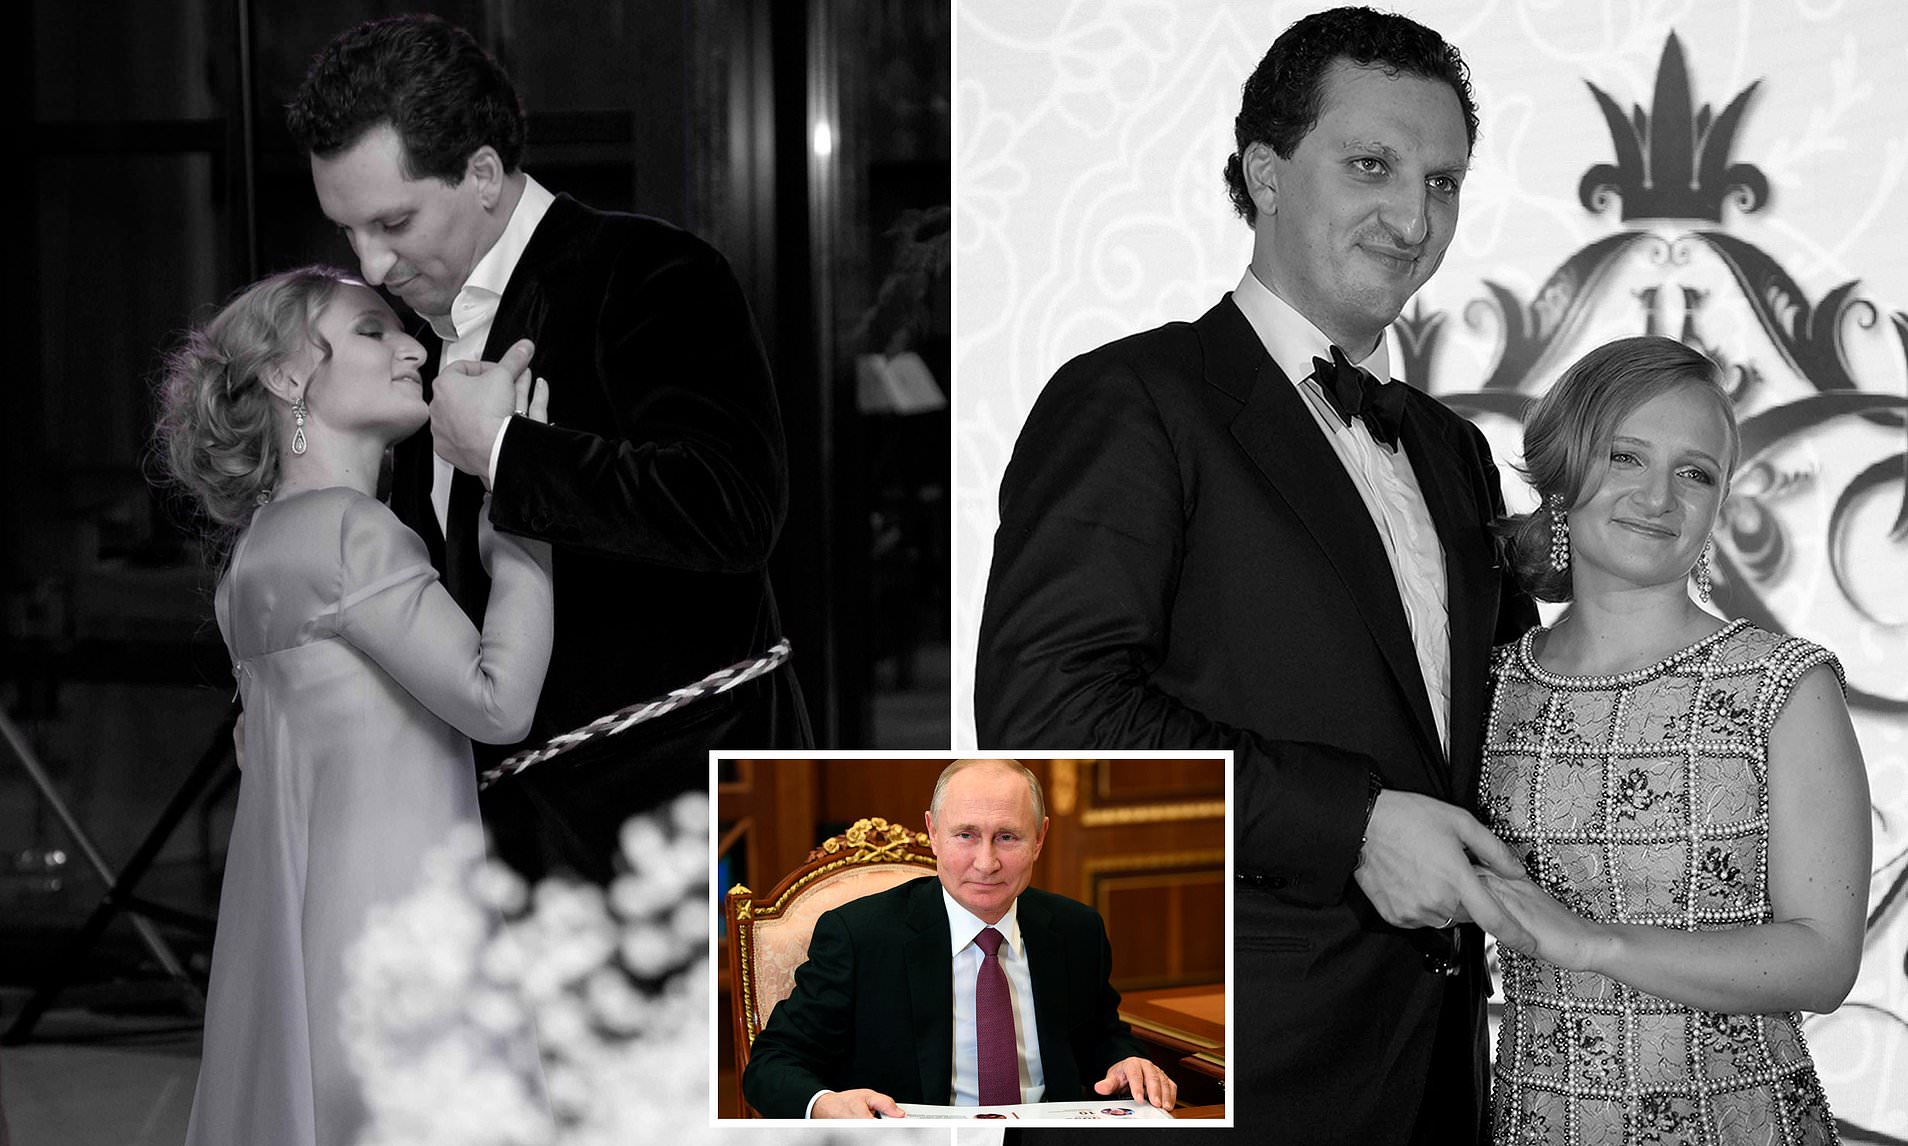 Putin'in kızına şok: Villasını işgal edip odasına girdiler!